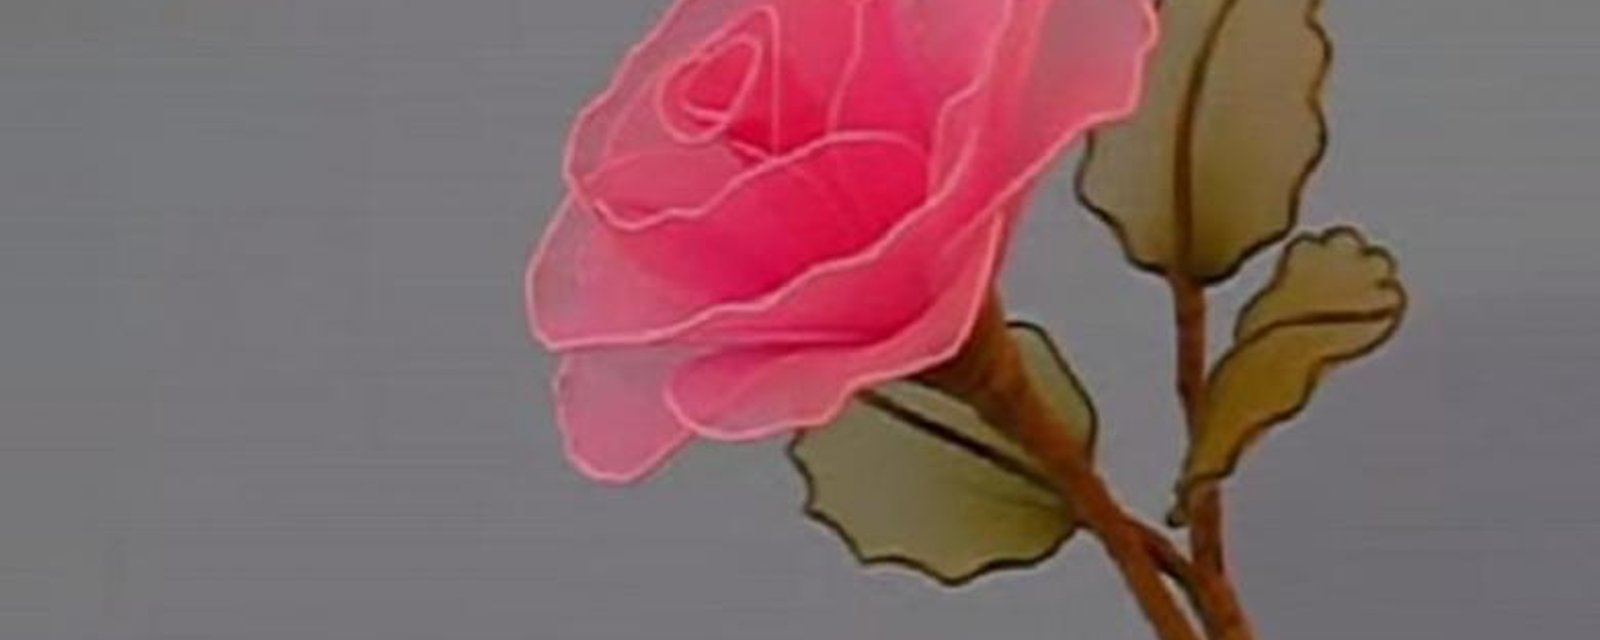 Fabriquer une rose artificielle avec des collants! 